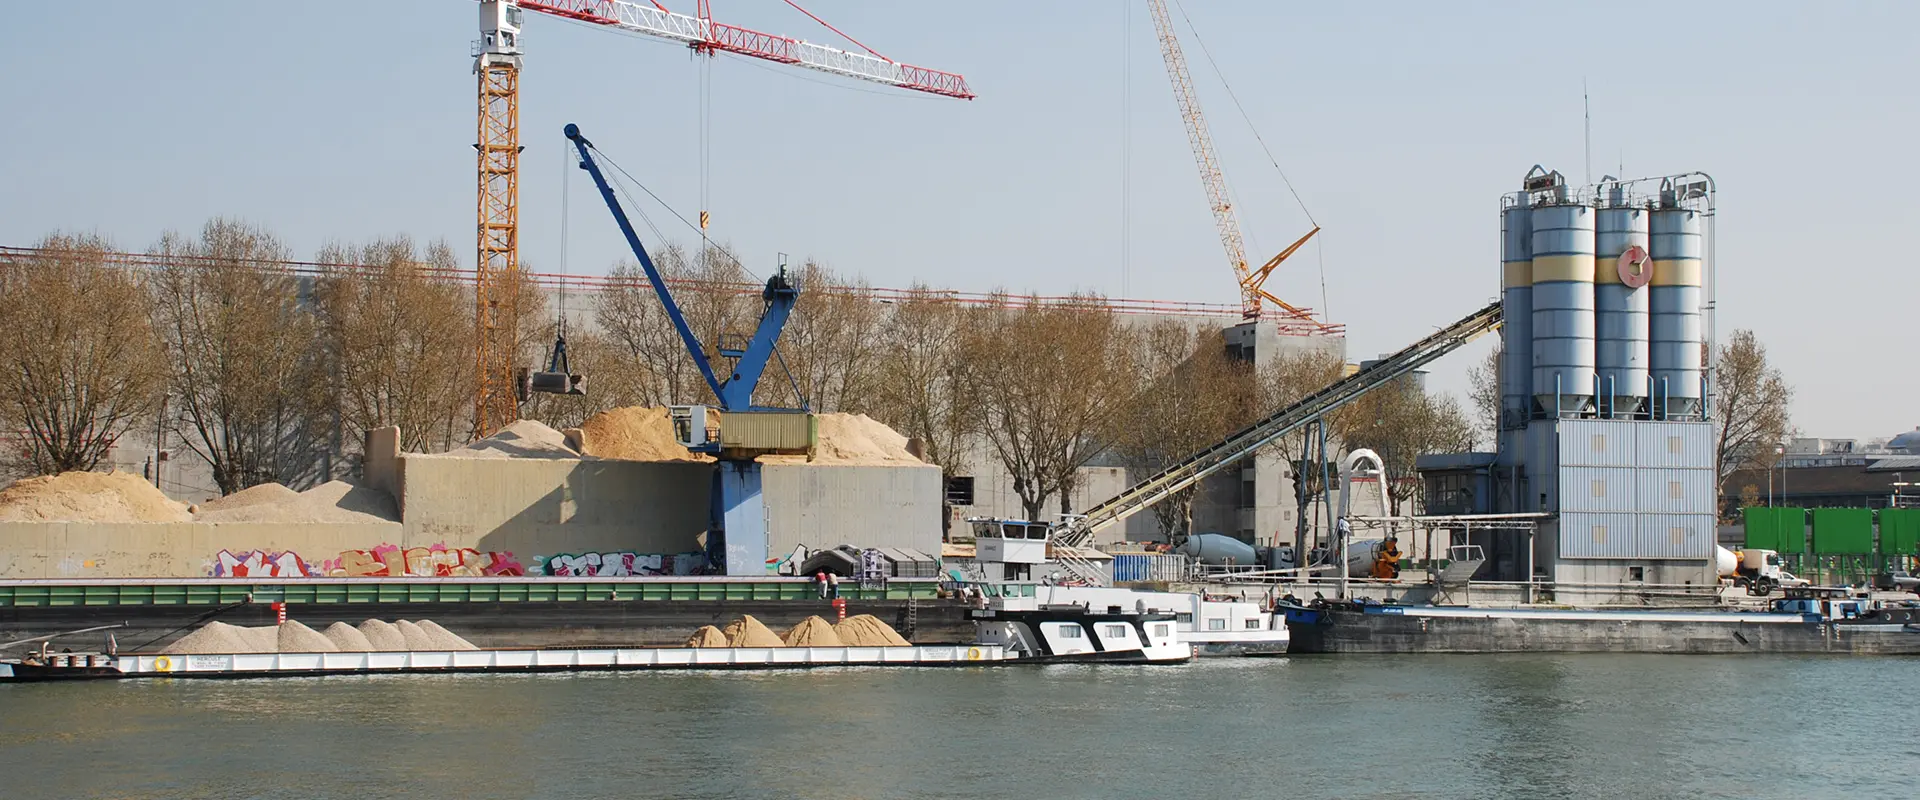 Livraison et déchargement de sable par barge, Île-de-France